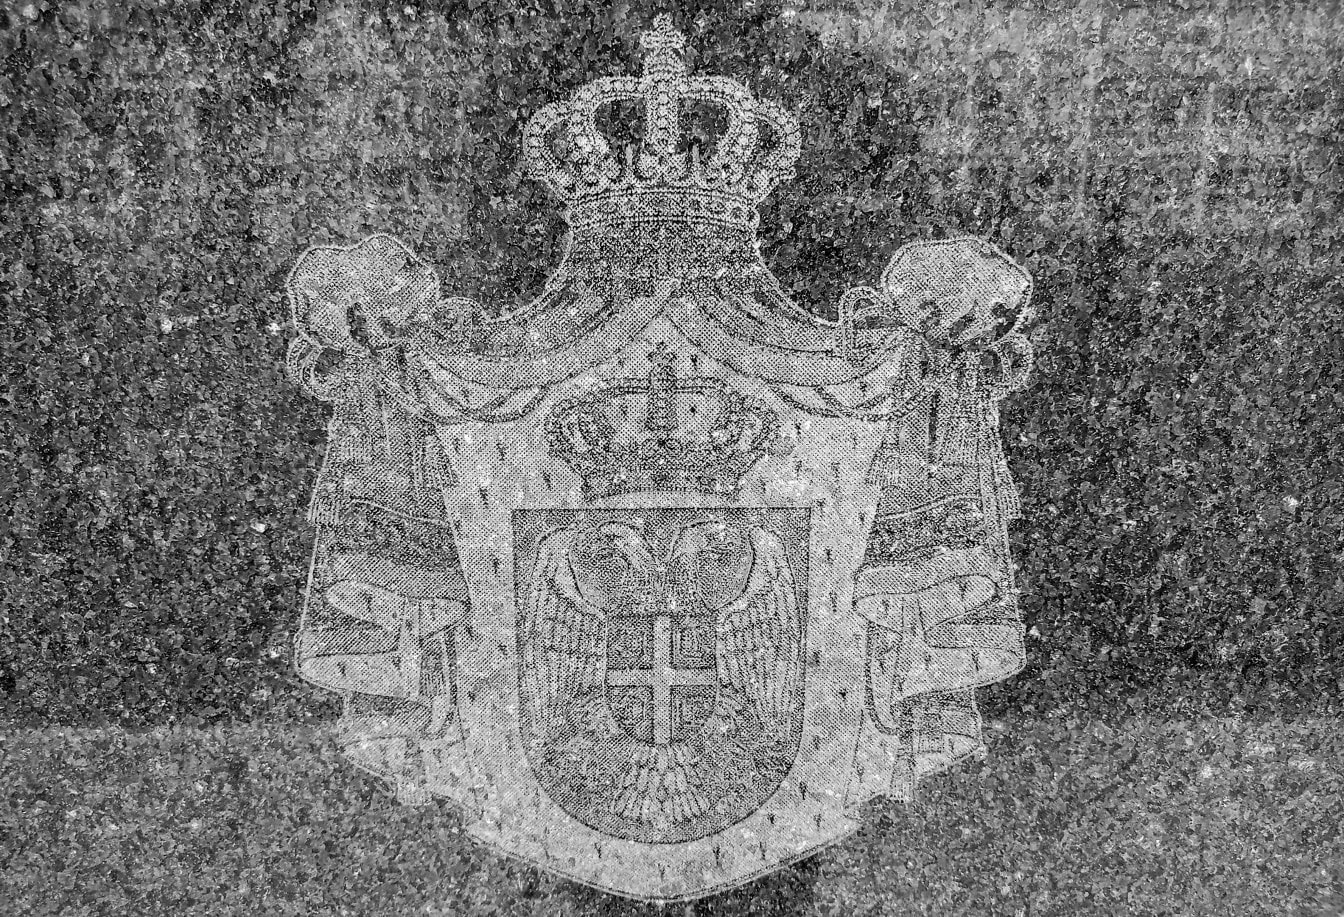 Zwart-wit beeld van het wapenschild van Servië met een kroon en tweekoppige witte adelaars